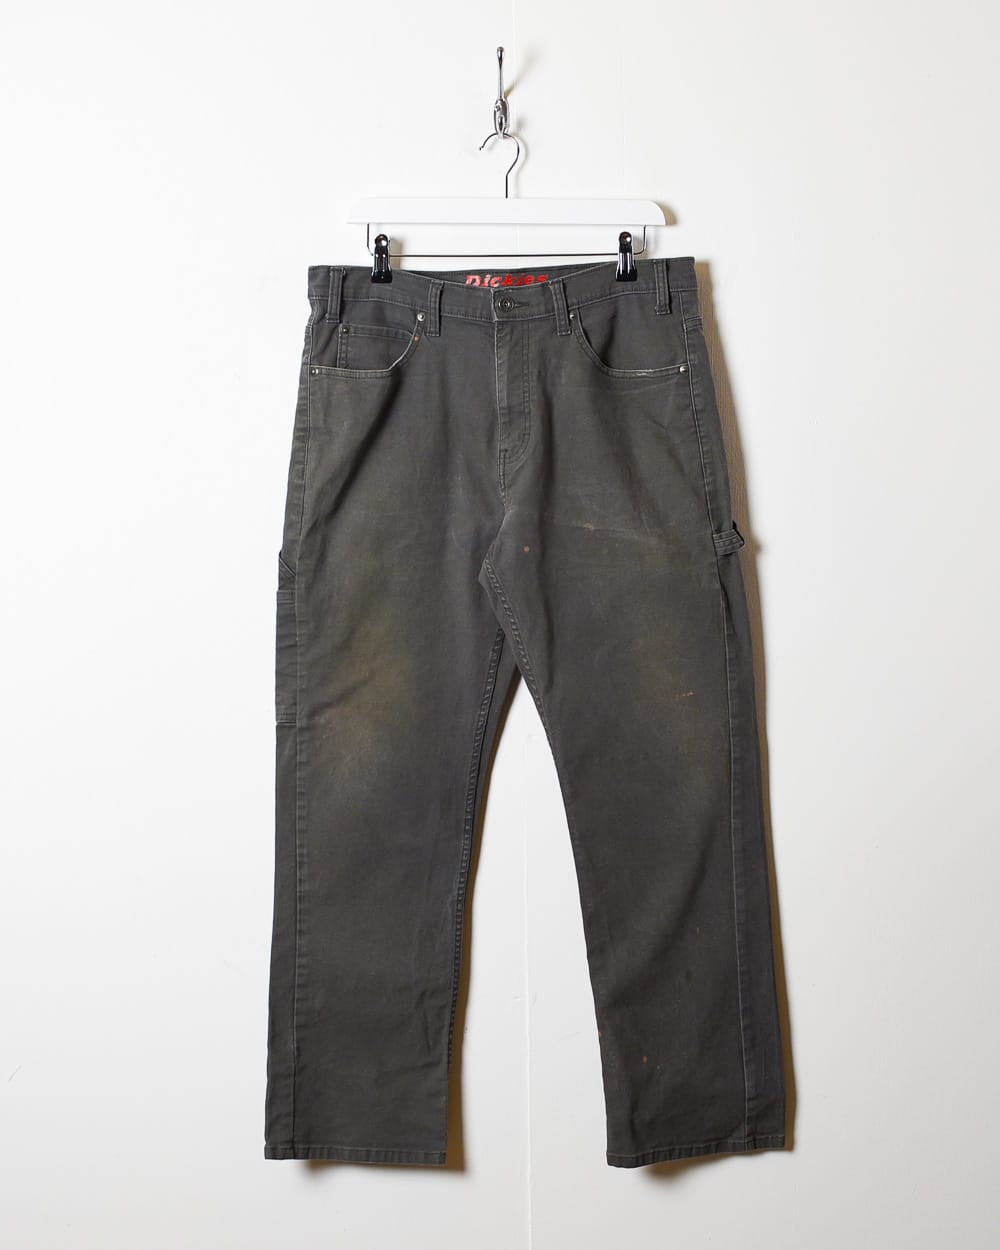 Grey Dickies Carpenter Jeans - W34 L29